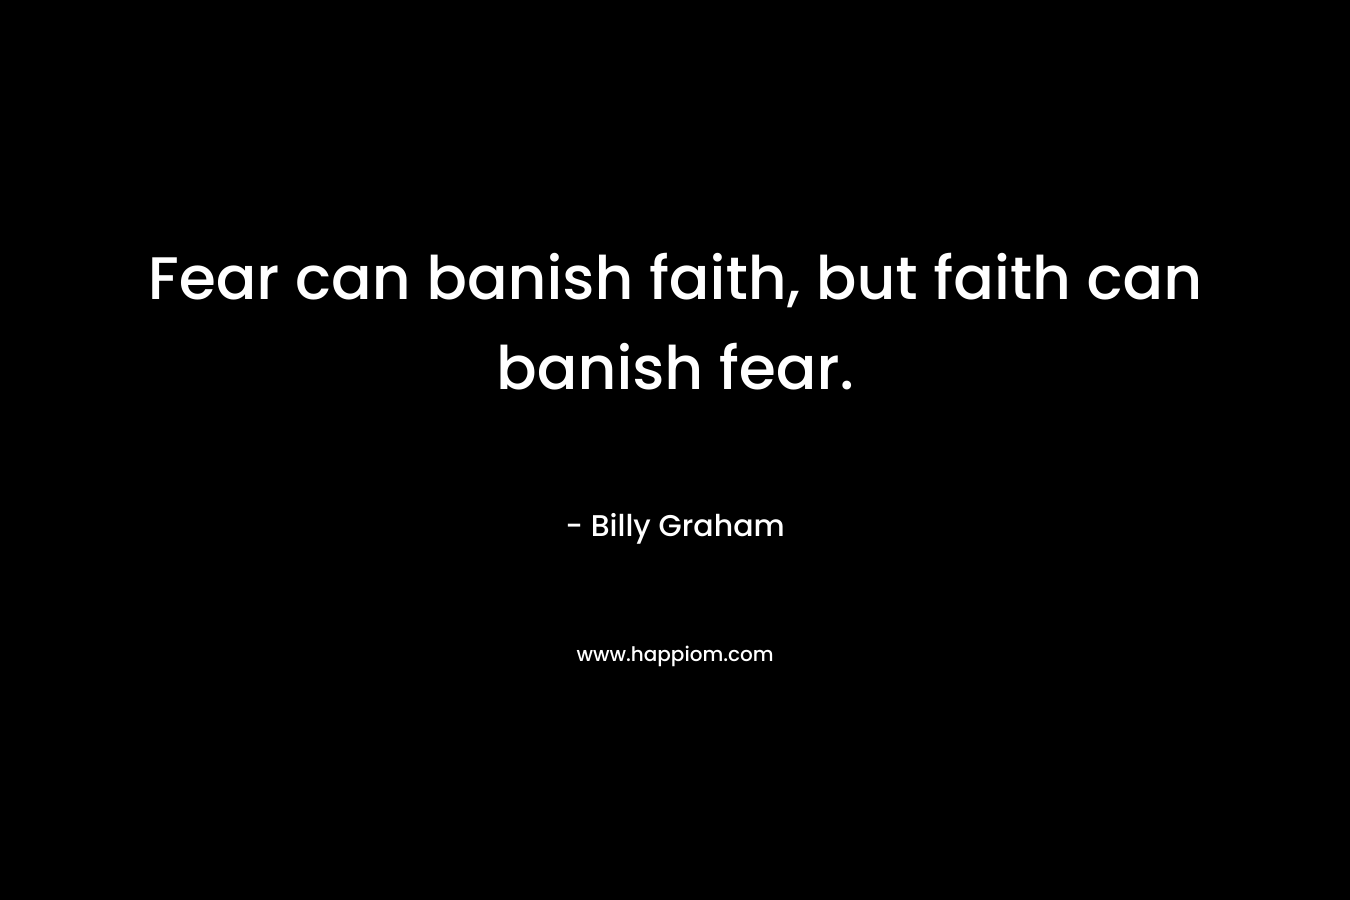 Fear can banish faith, but faith can banish fear.